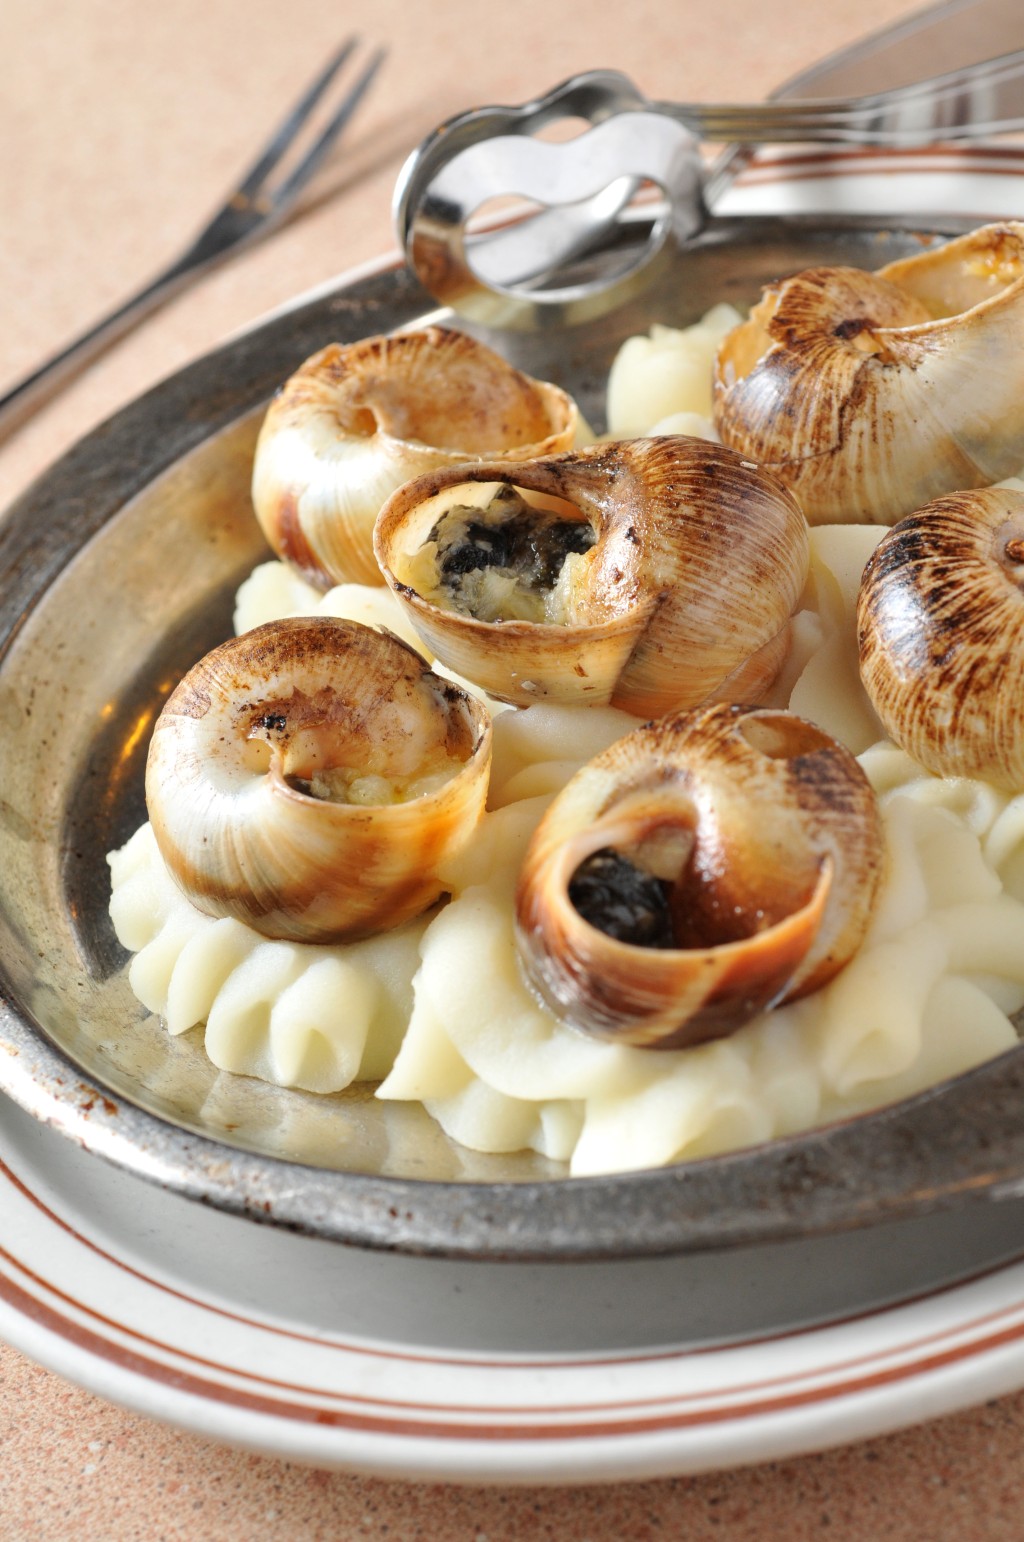 另一道經典菜式是田螺焗薯蓉。